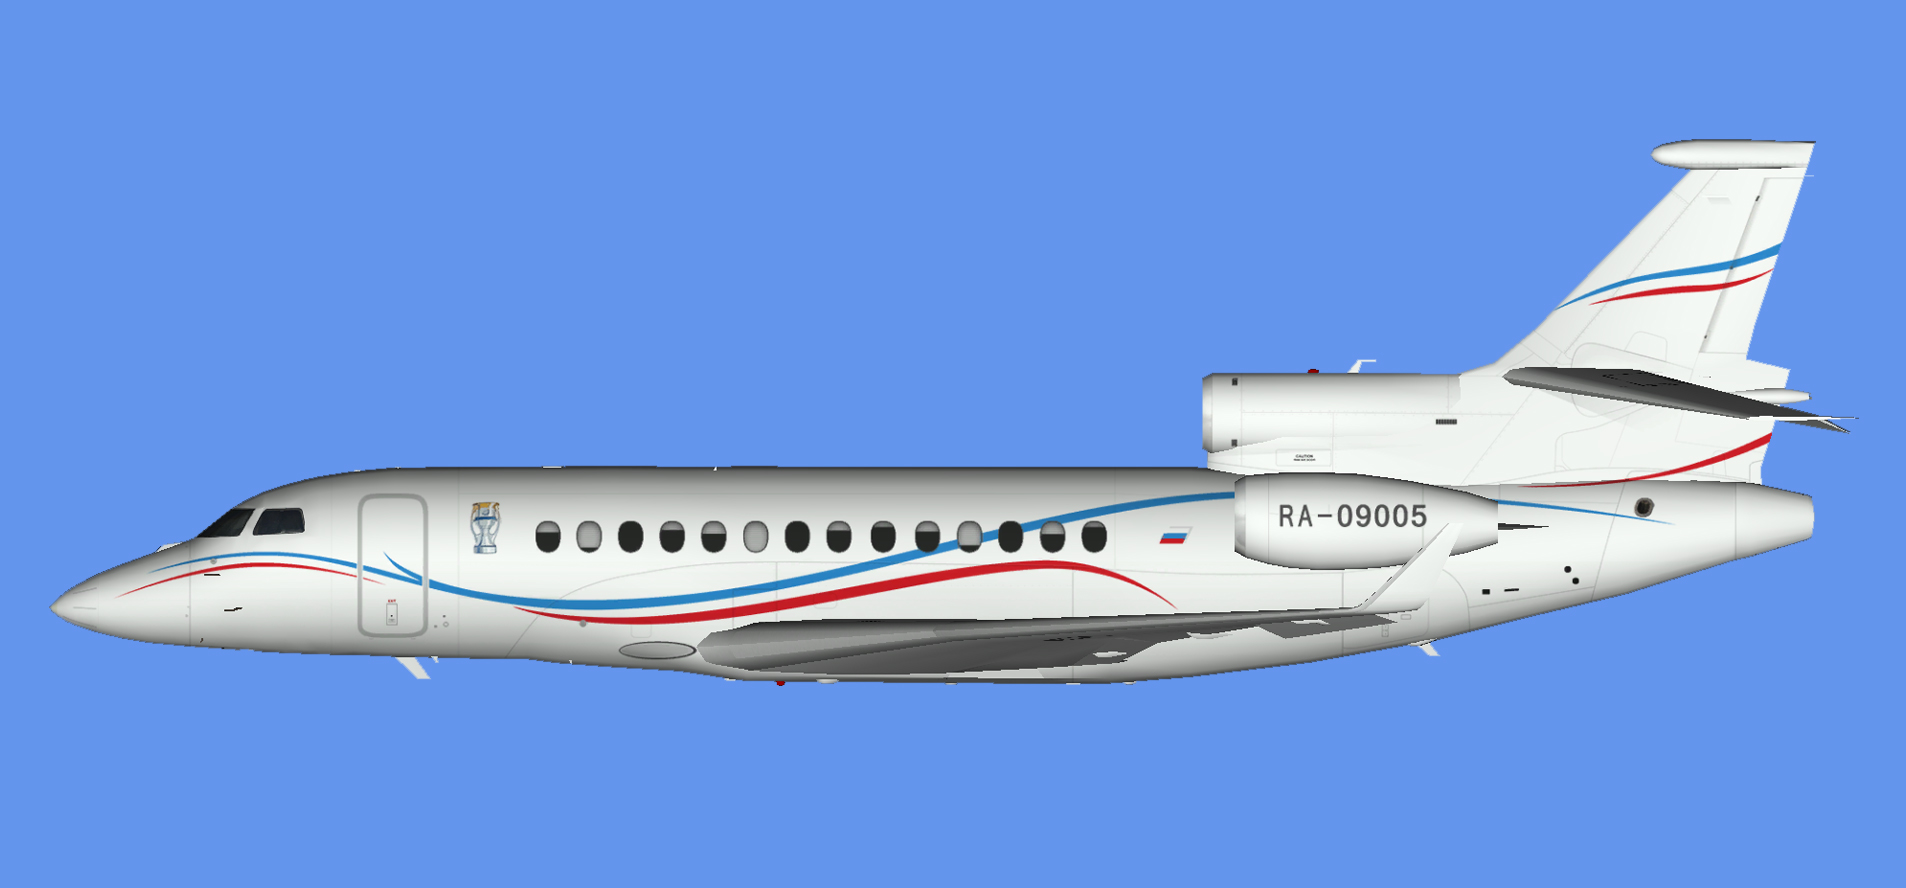 Dassault Falcon 7x RA-09005